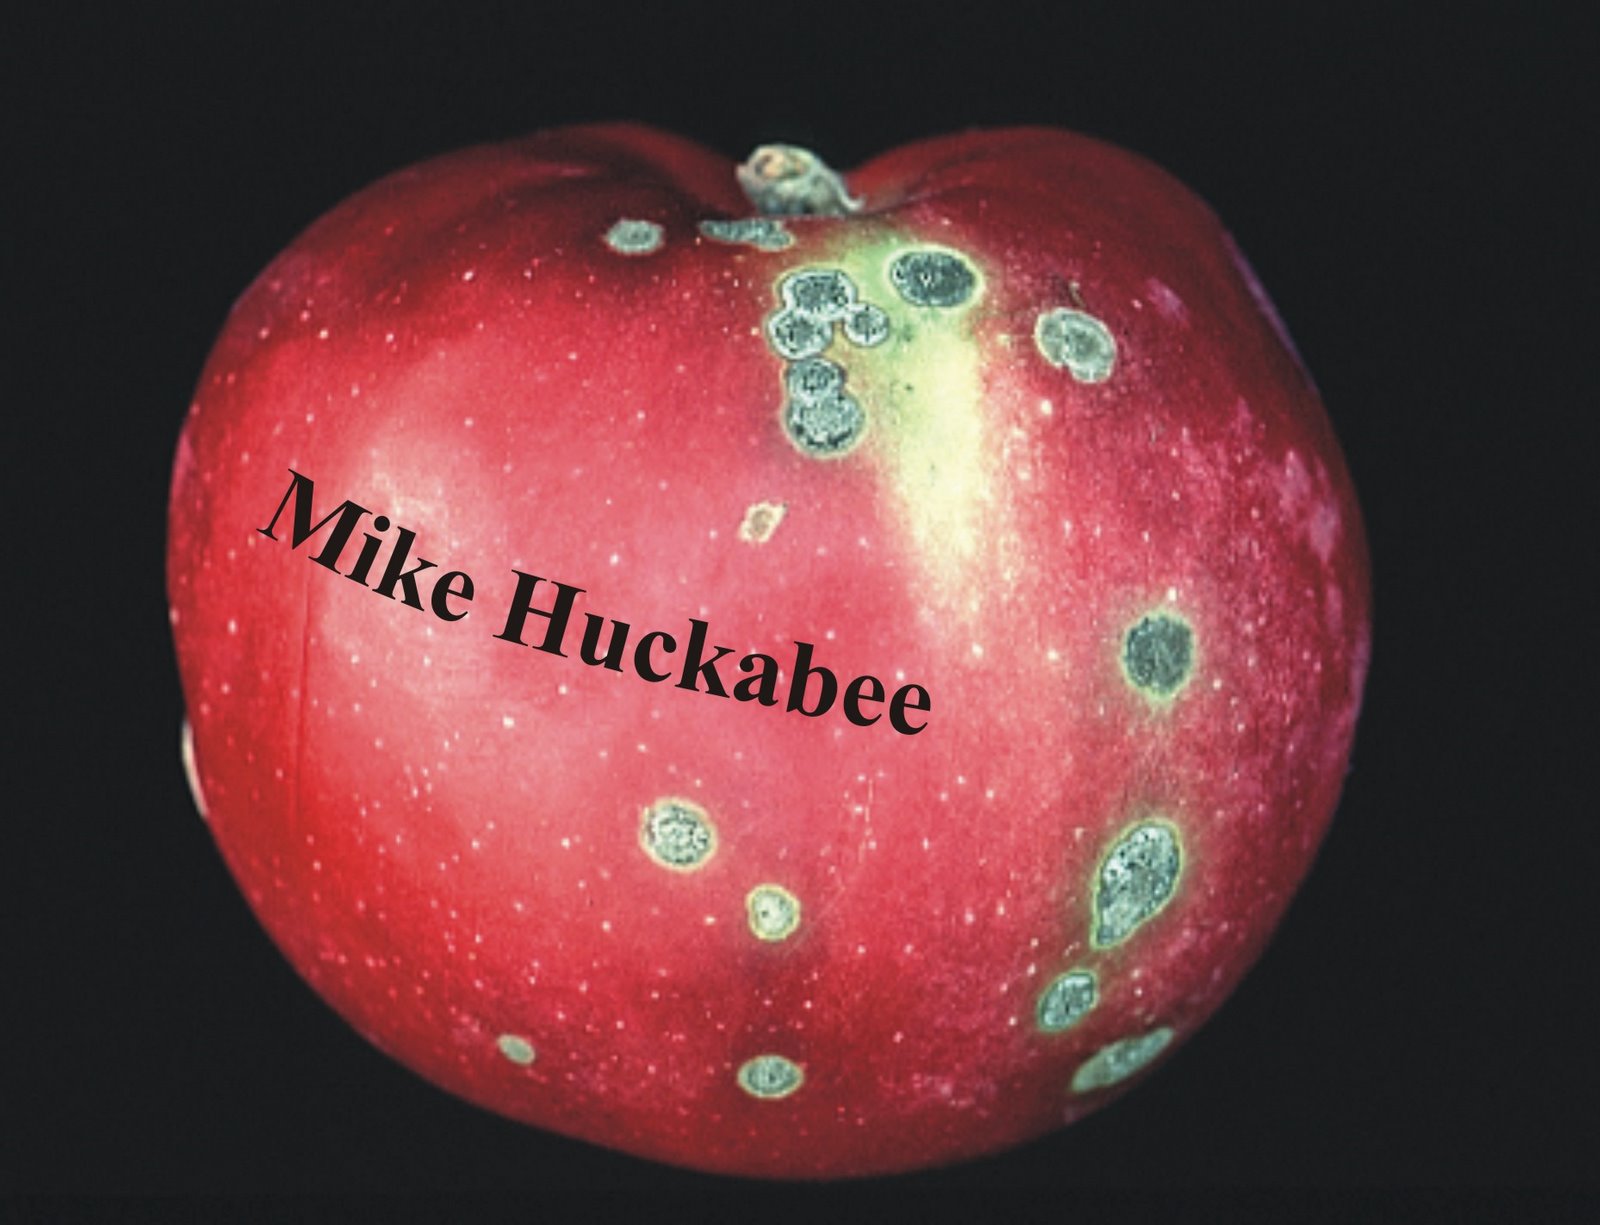 [mike.huckabee.jpg]